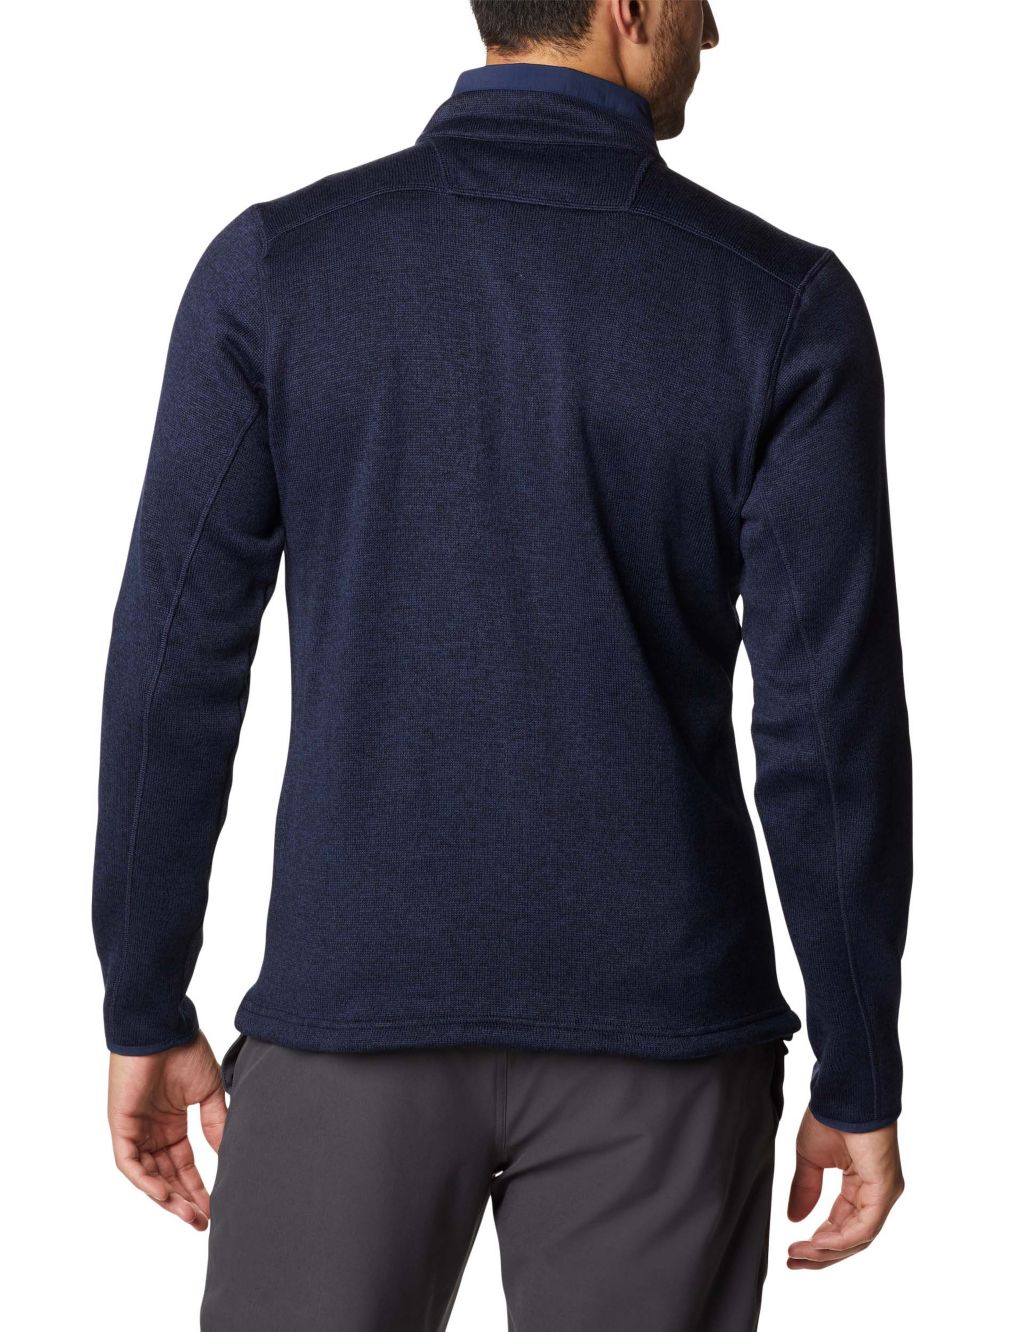 Sweater Weather Fleece Funnel Neck Jacket image 3